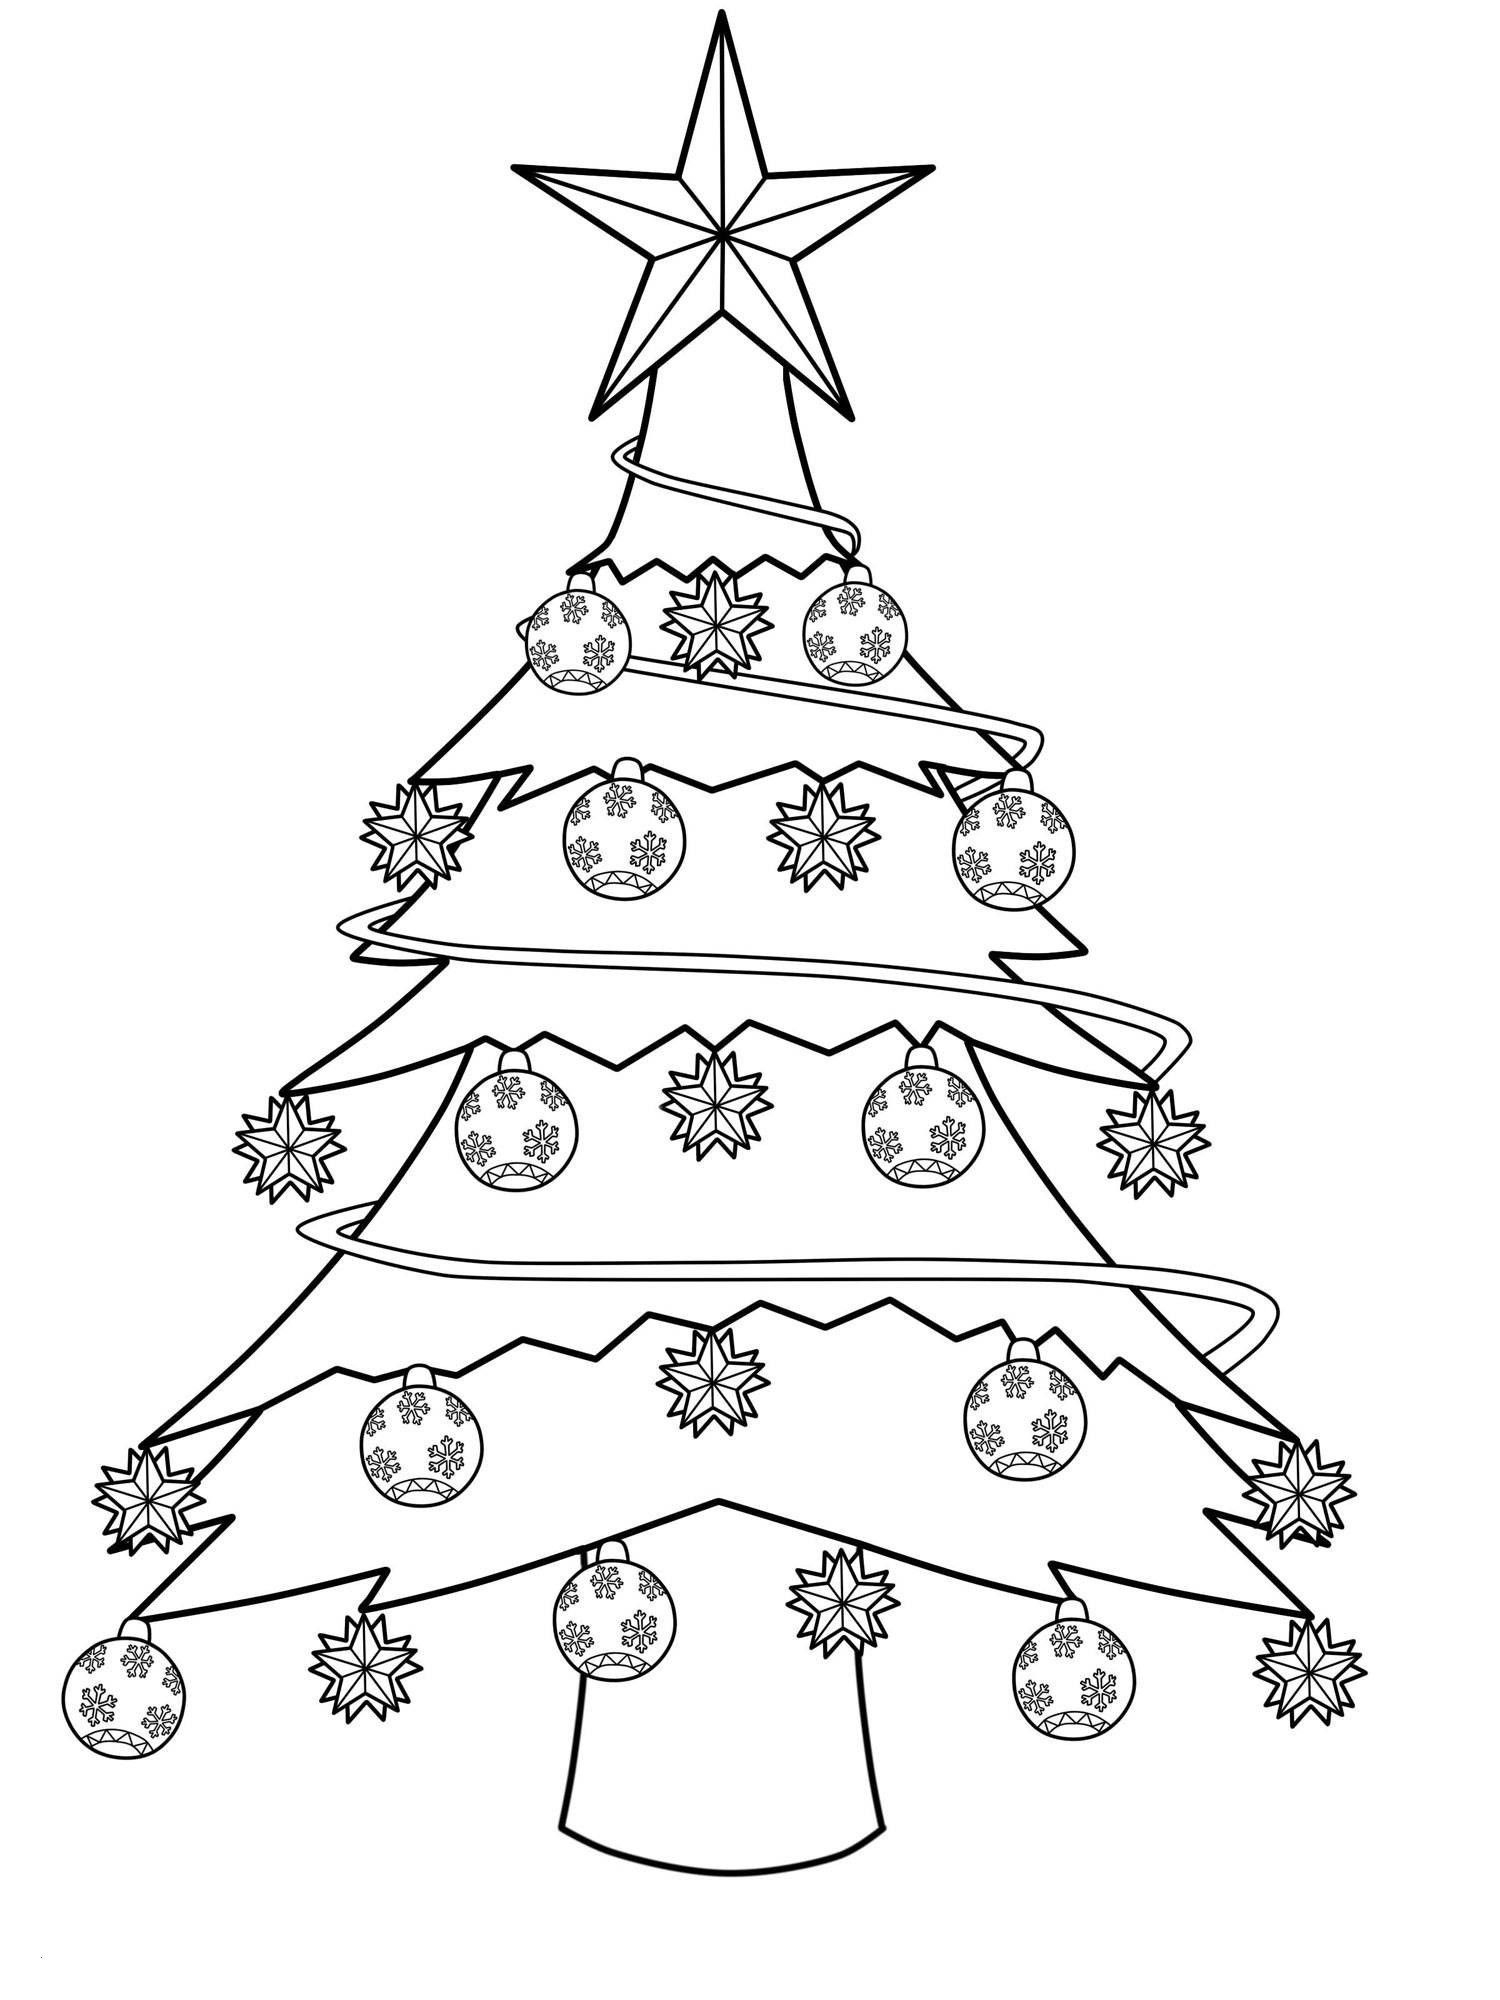 Frisch Schablone Tannenbaum | Color, Seasons bei Weihnachtsbäume Zum Ausdrucken